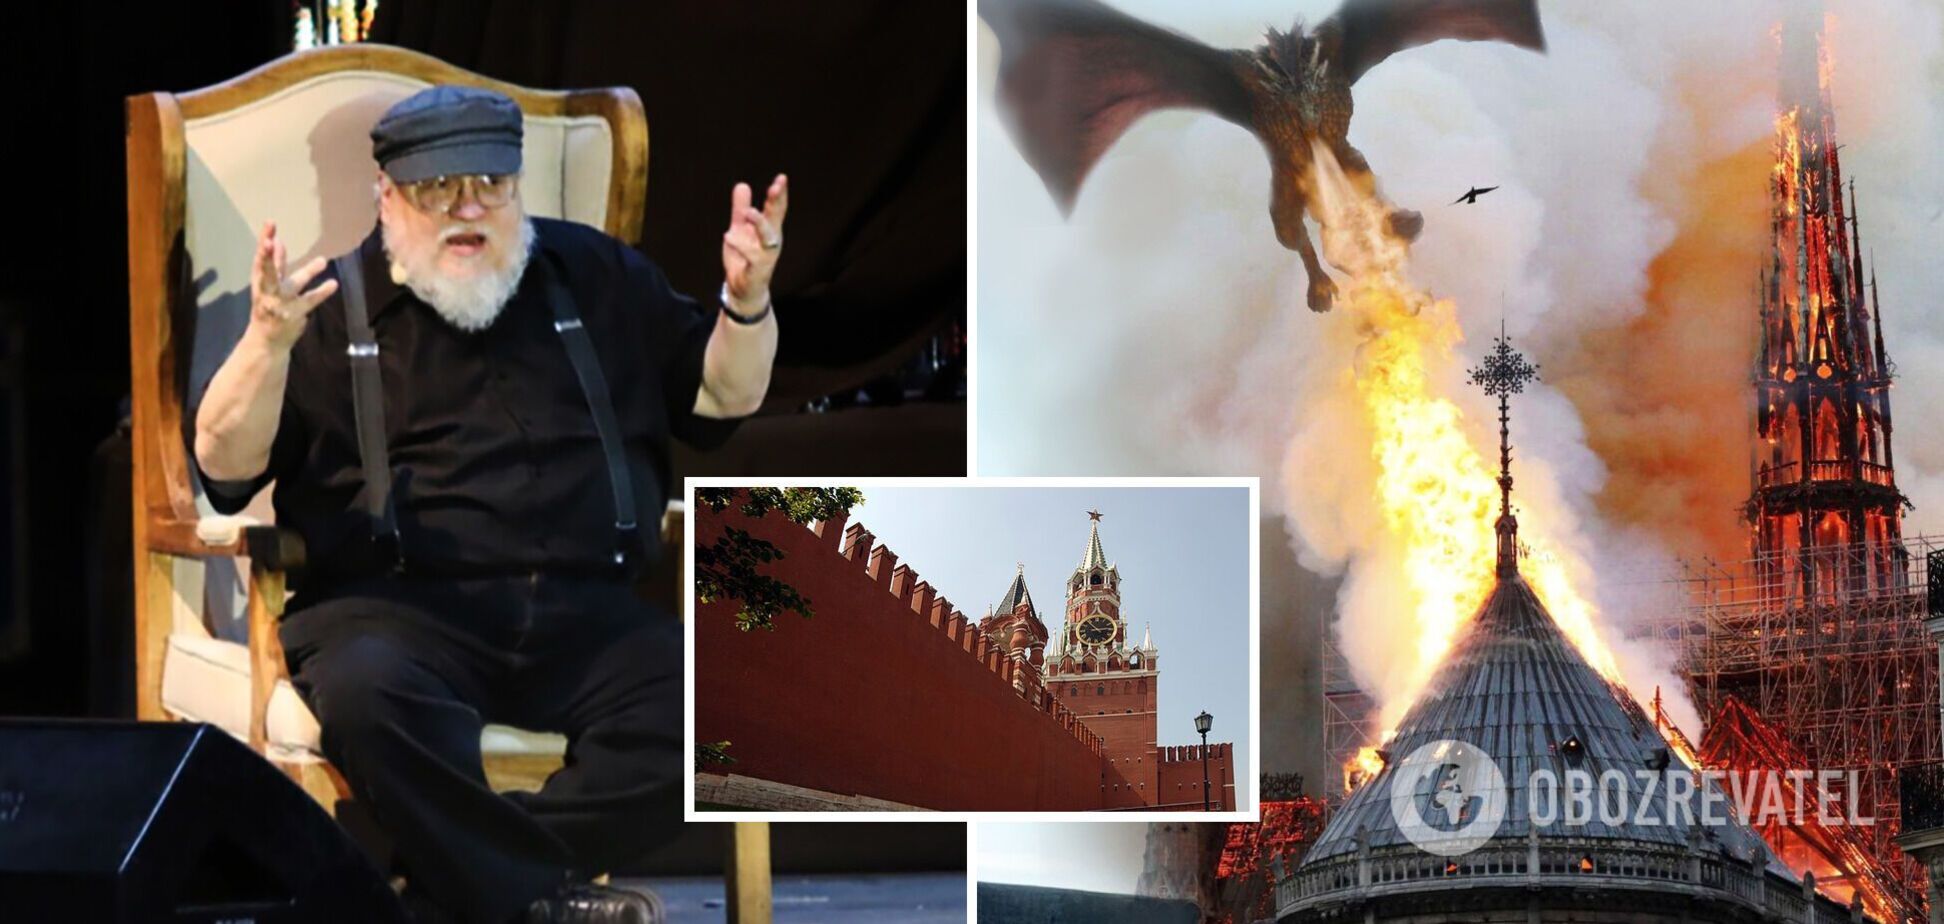 Автор 'Гри престолів' Джордж Мартін заявив, що хотів би спалити Кремль одним з драконів, на тлі ядерного шантажу РФ